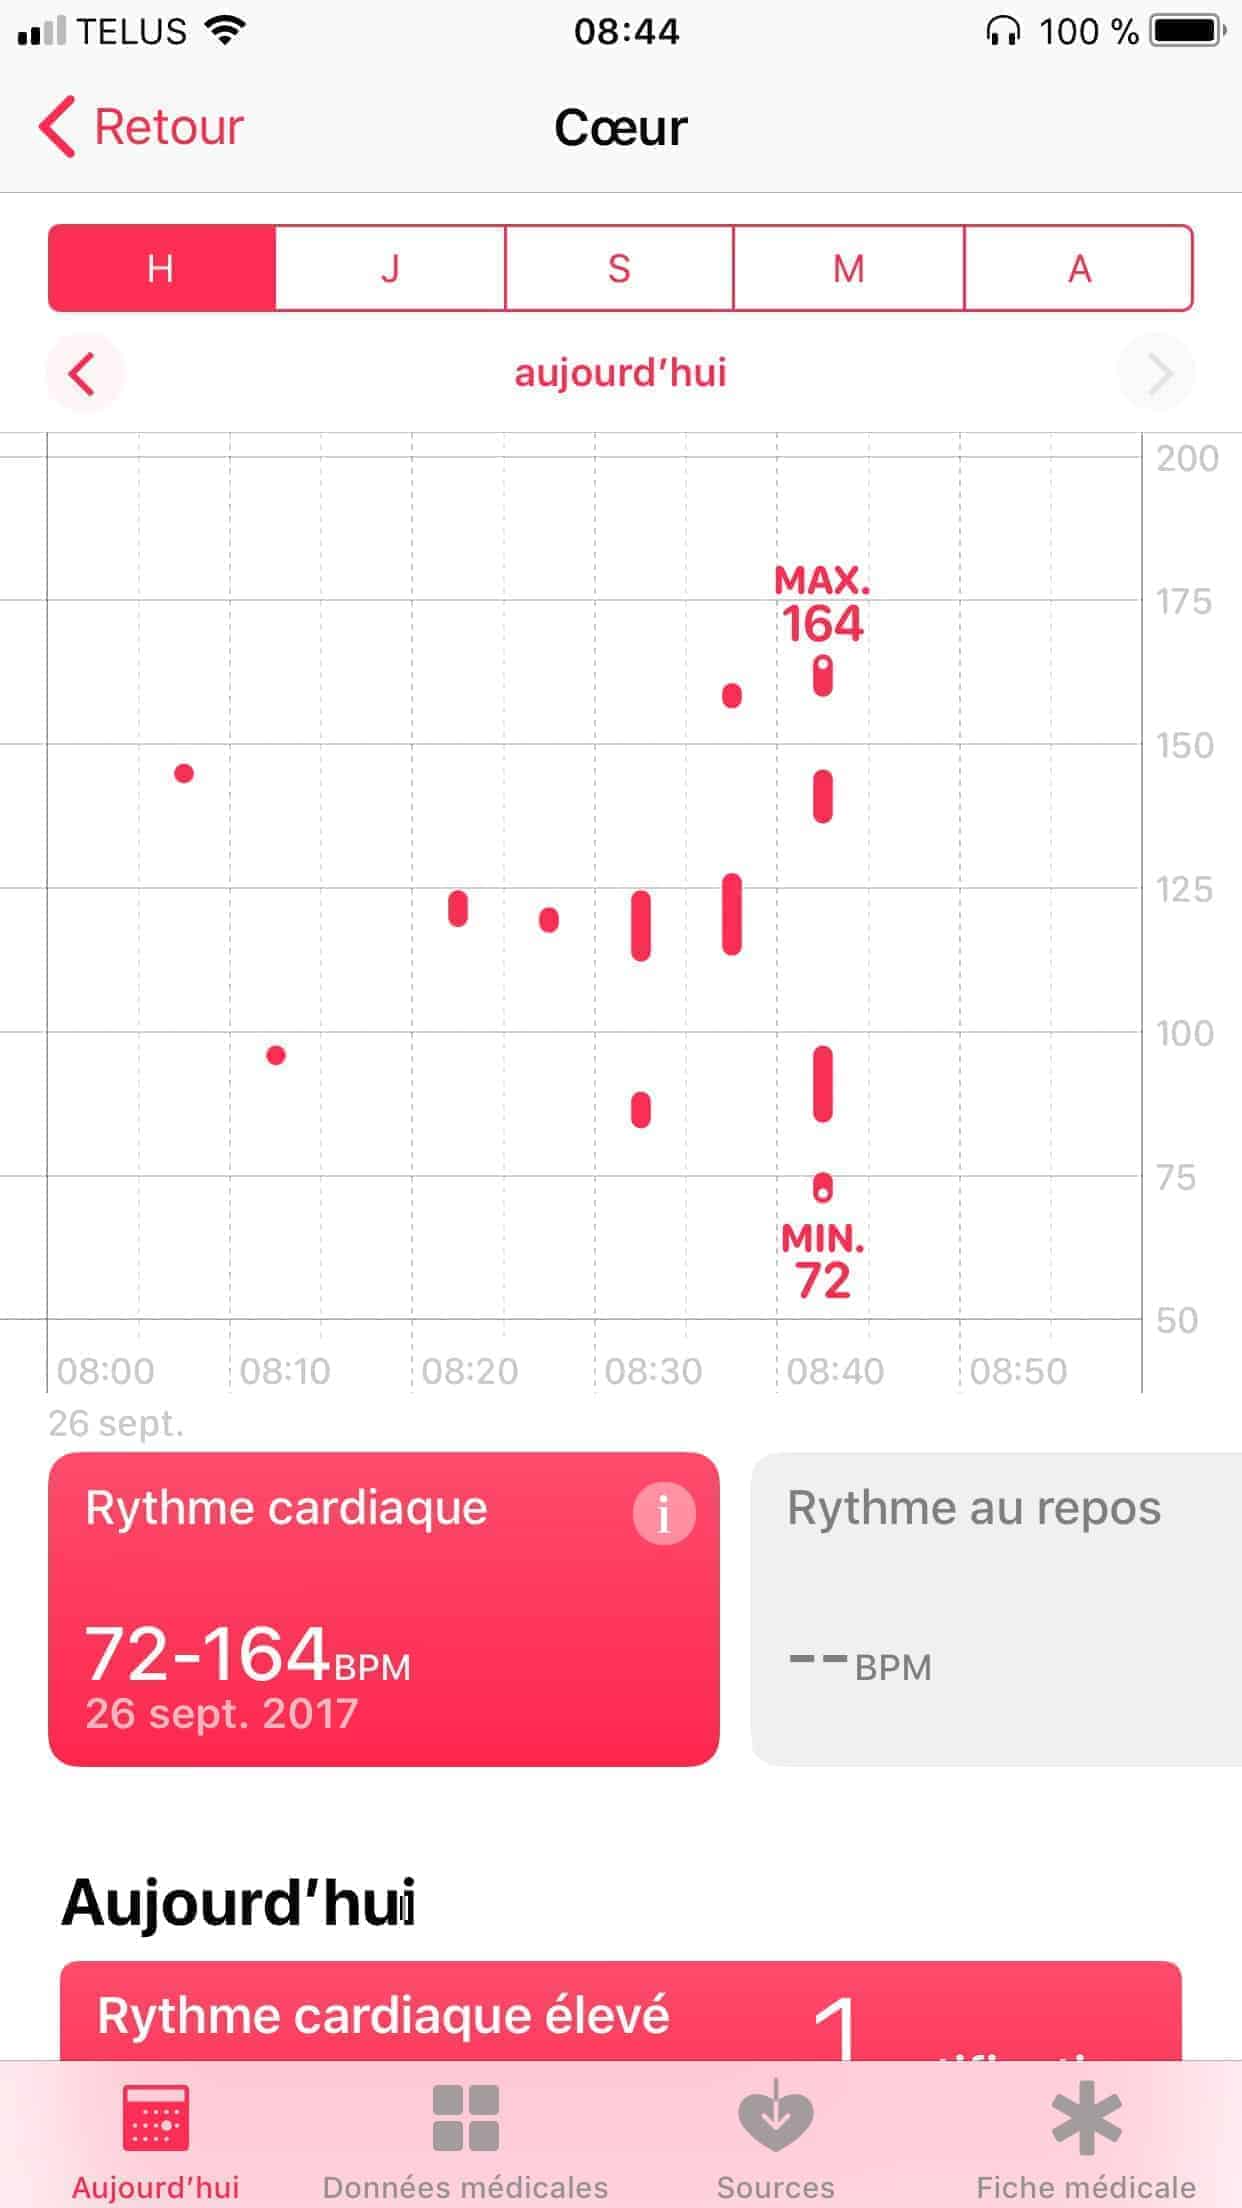 Mon Apple Watch a détecté une crise d’arythmie cardiaque avant moi